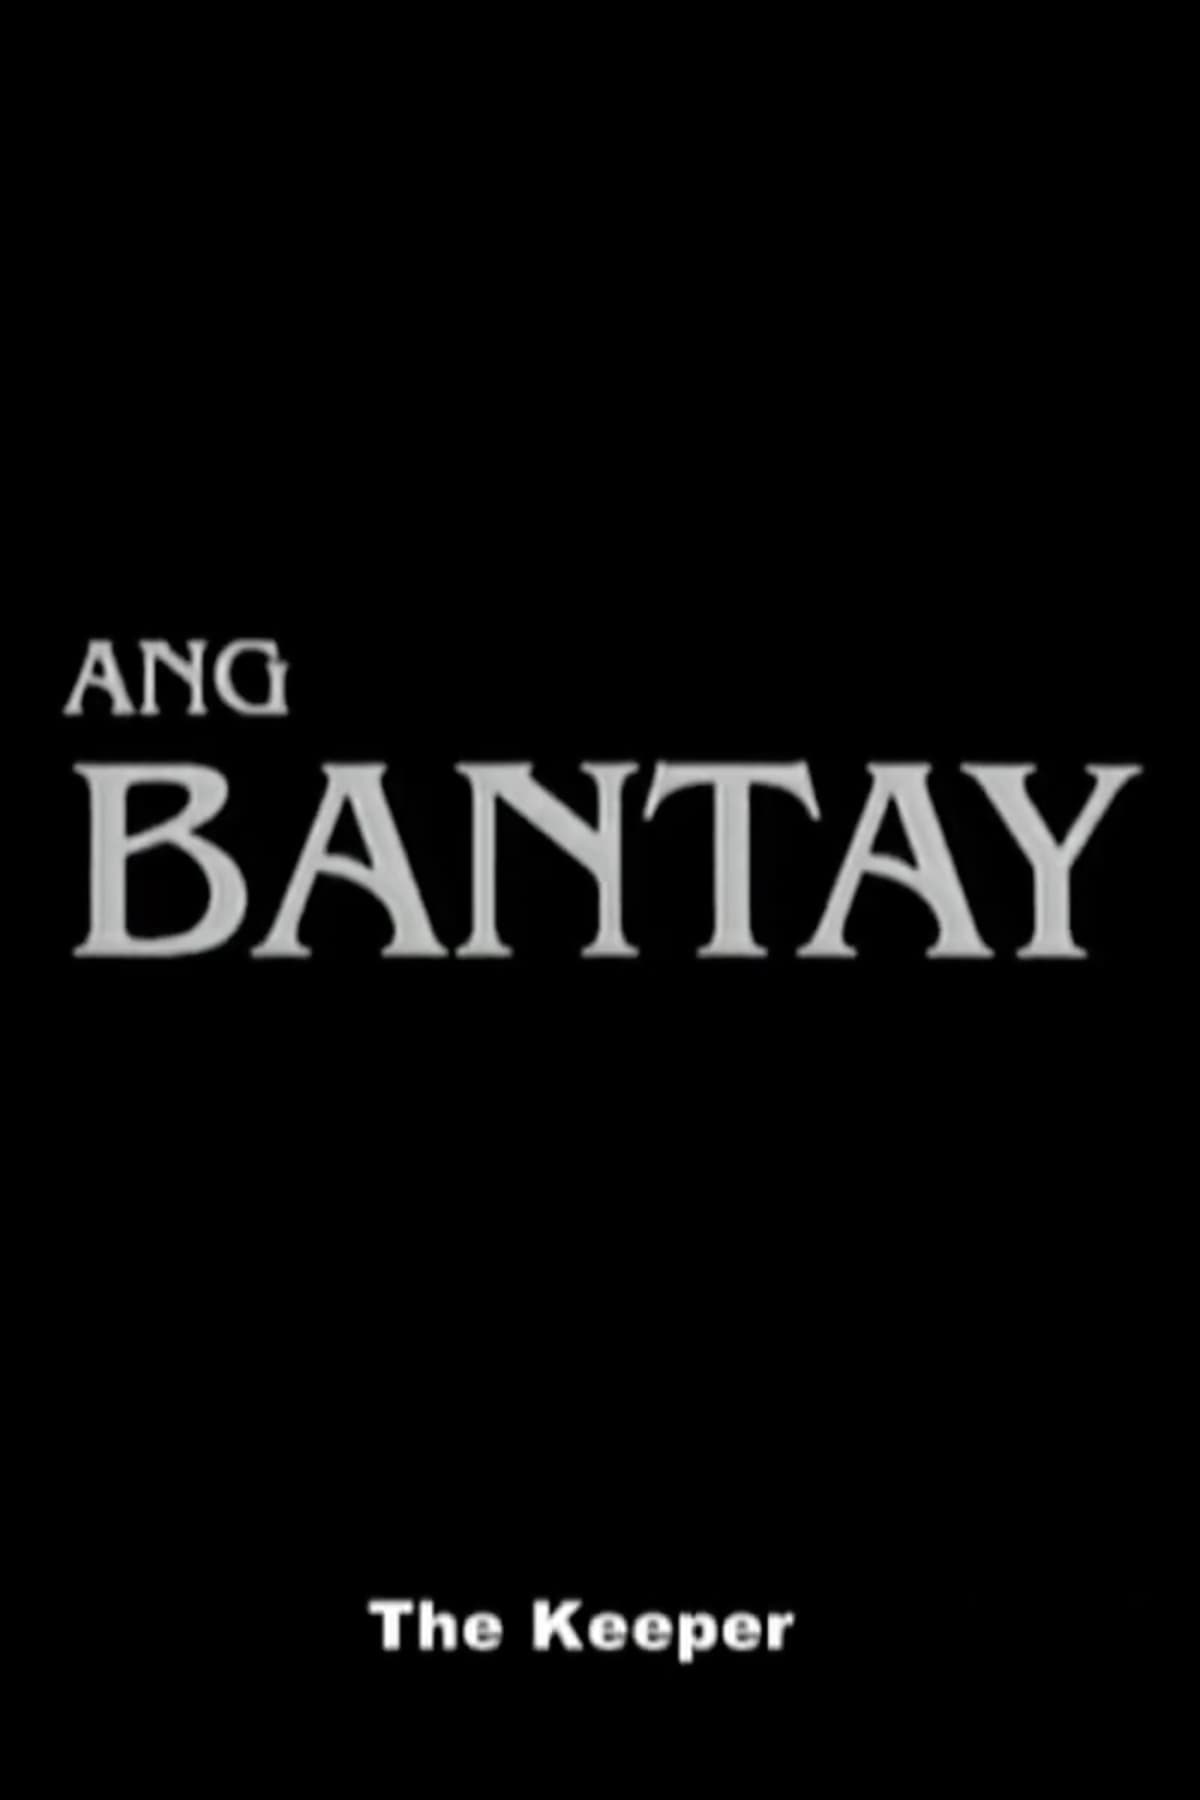 Ang Bantay